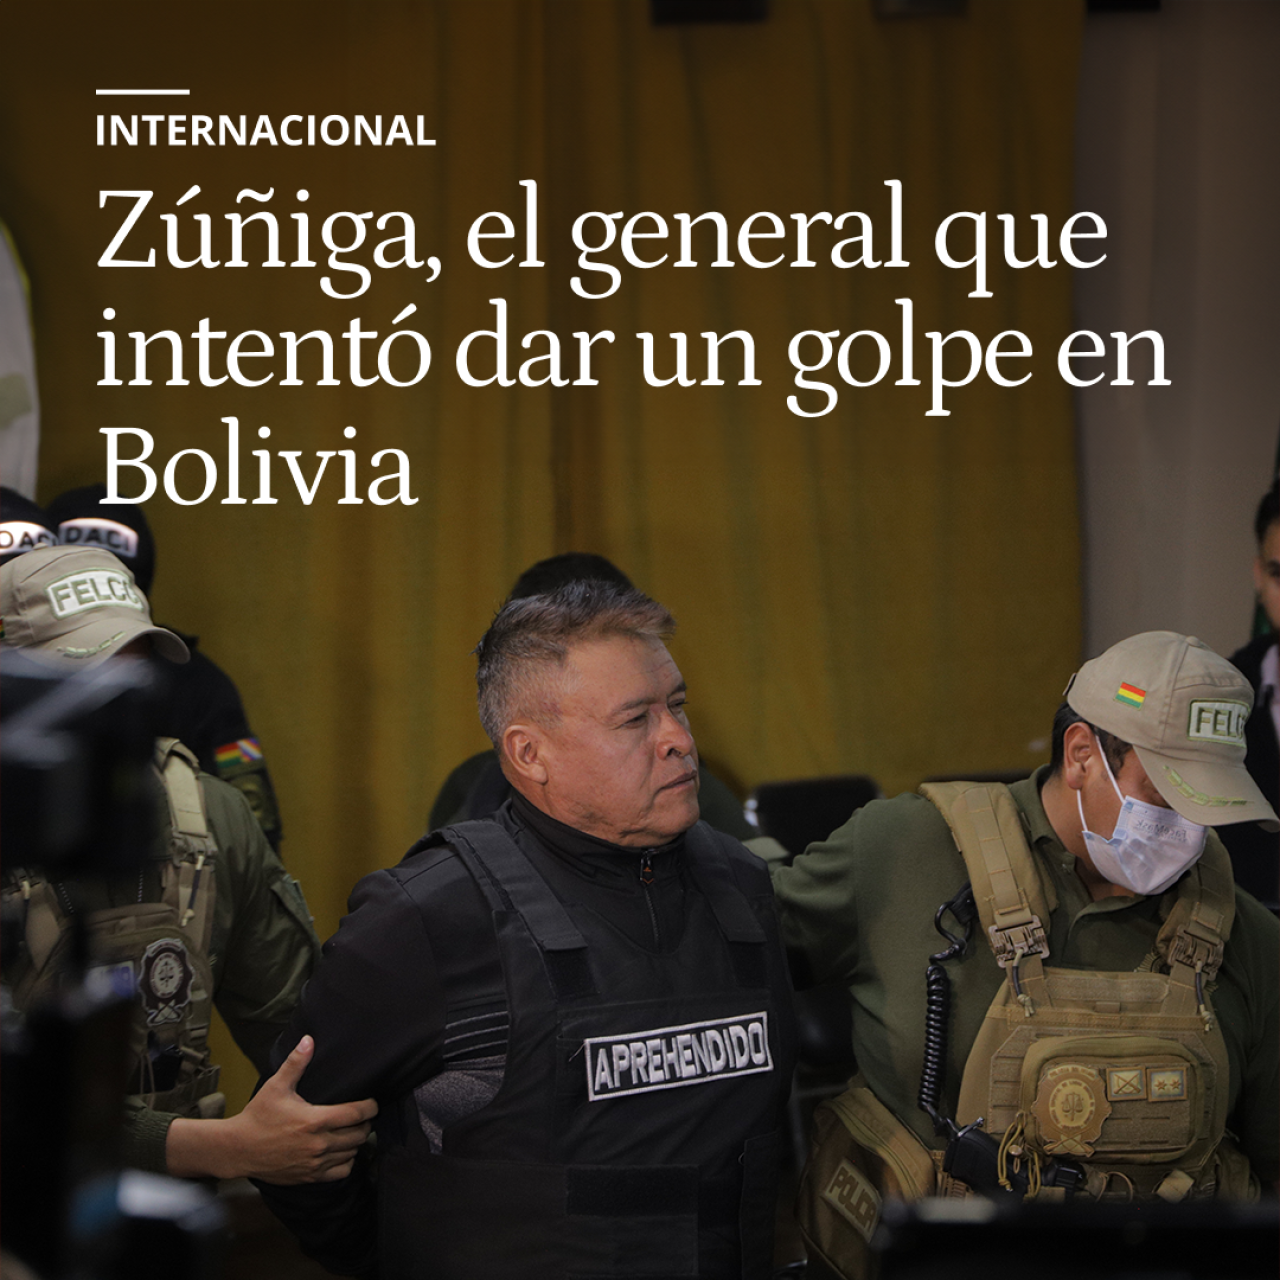 Zúñiga, el general acusado de corrupción y opositor a Evo Morales que intentó dar un golpe en Bolivia